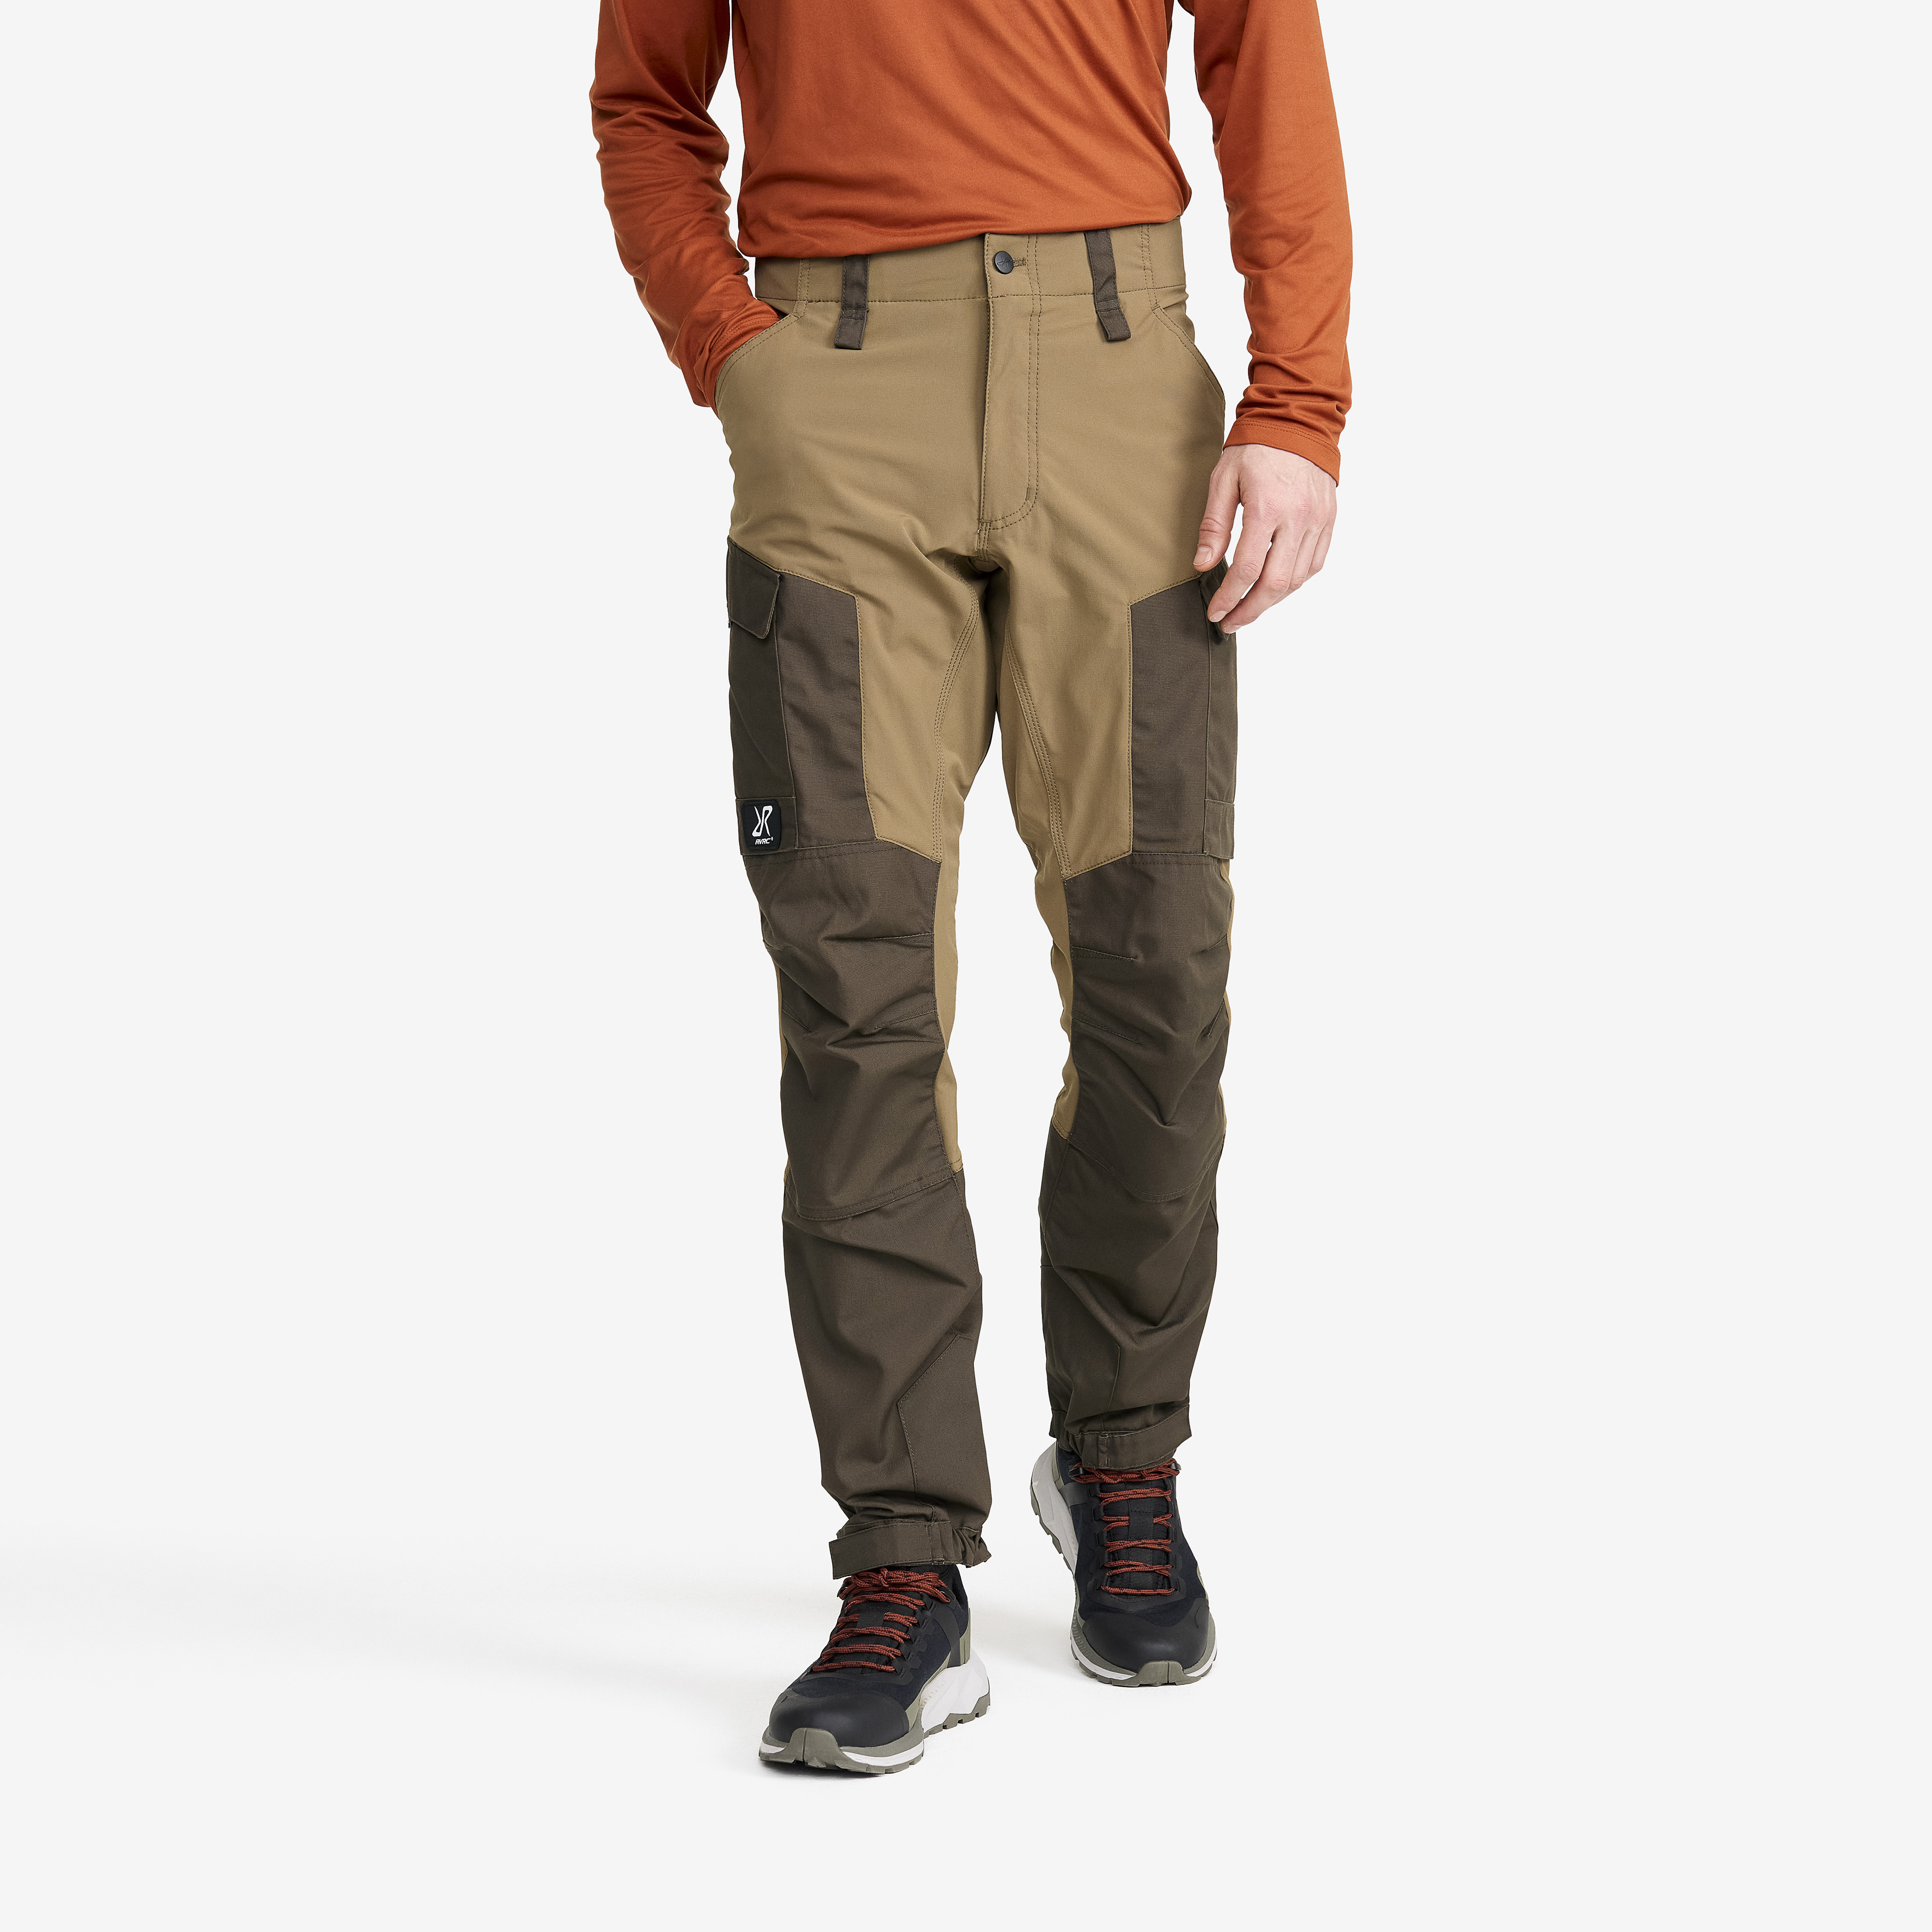 RVRC GP outdoor bukser for mænd i brun